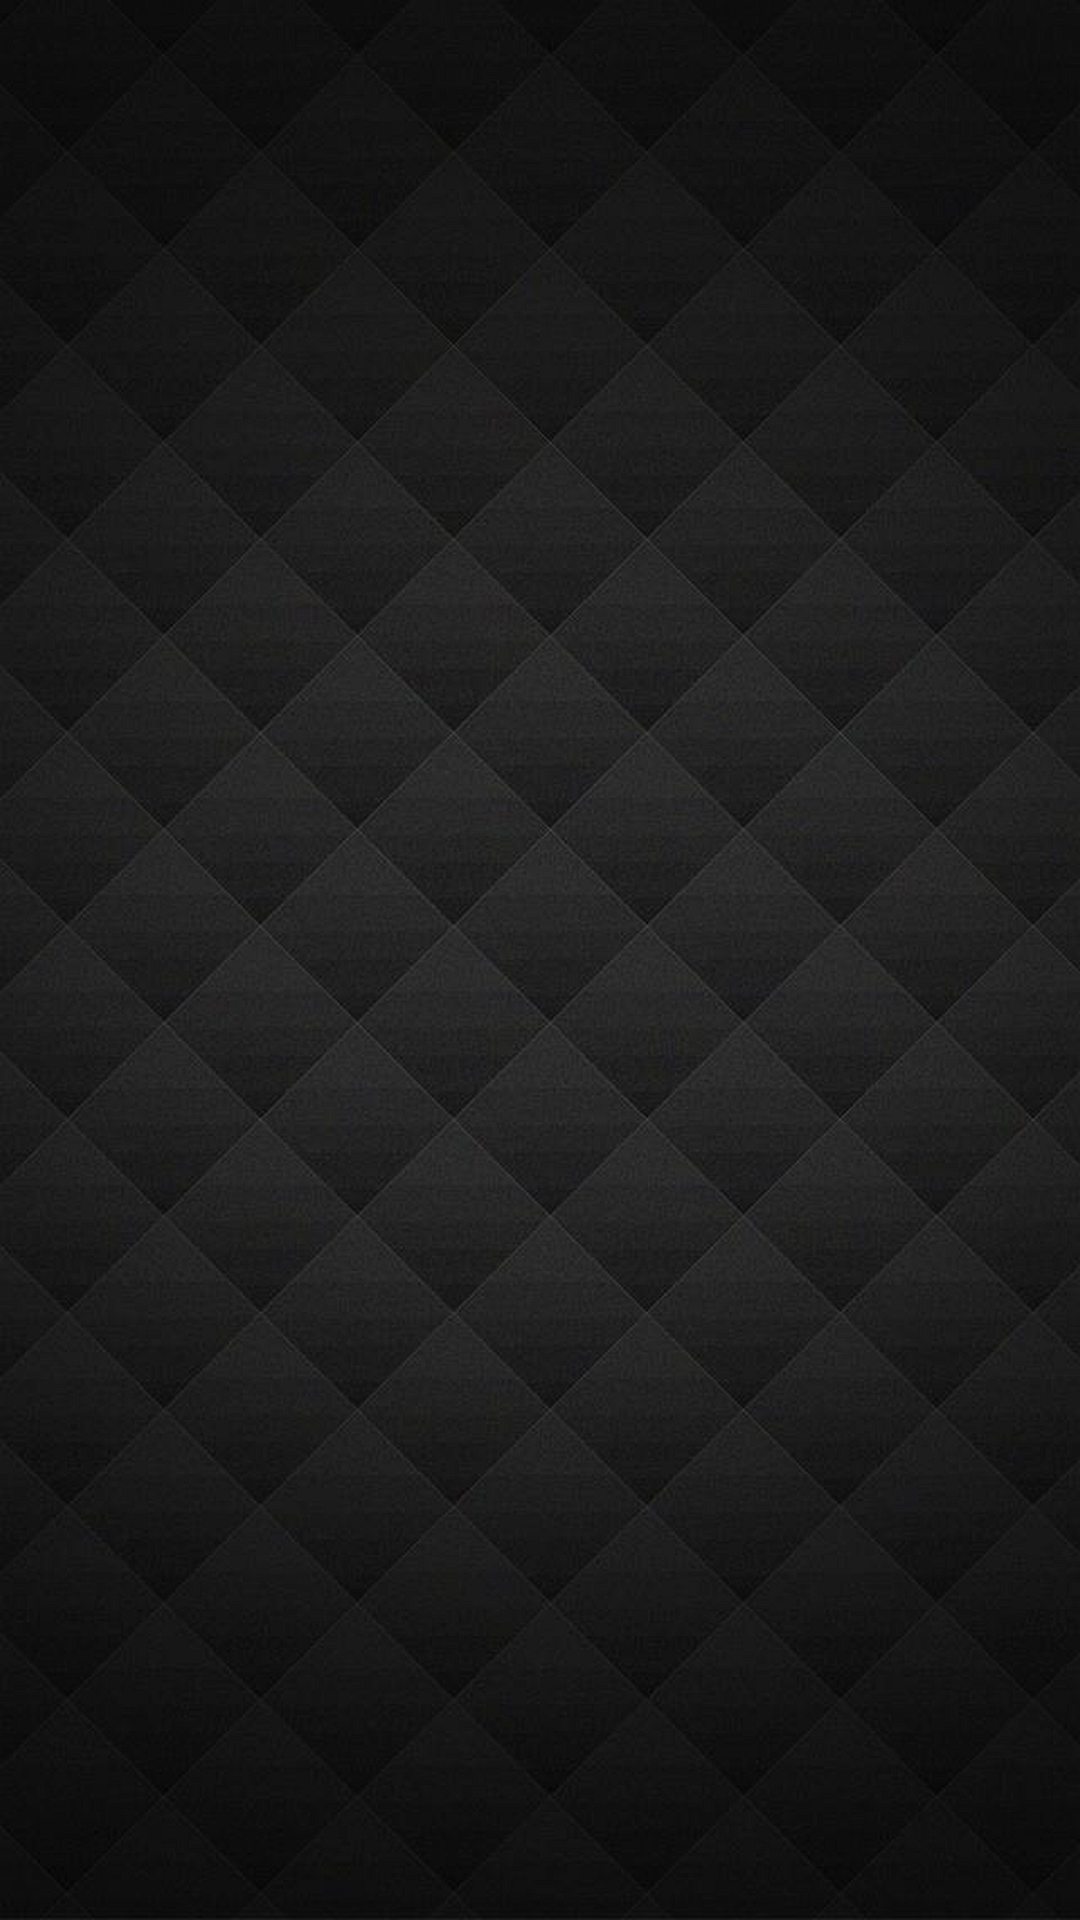 Black Wallpaper Hd Smartphone gambar ke 20